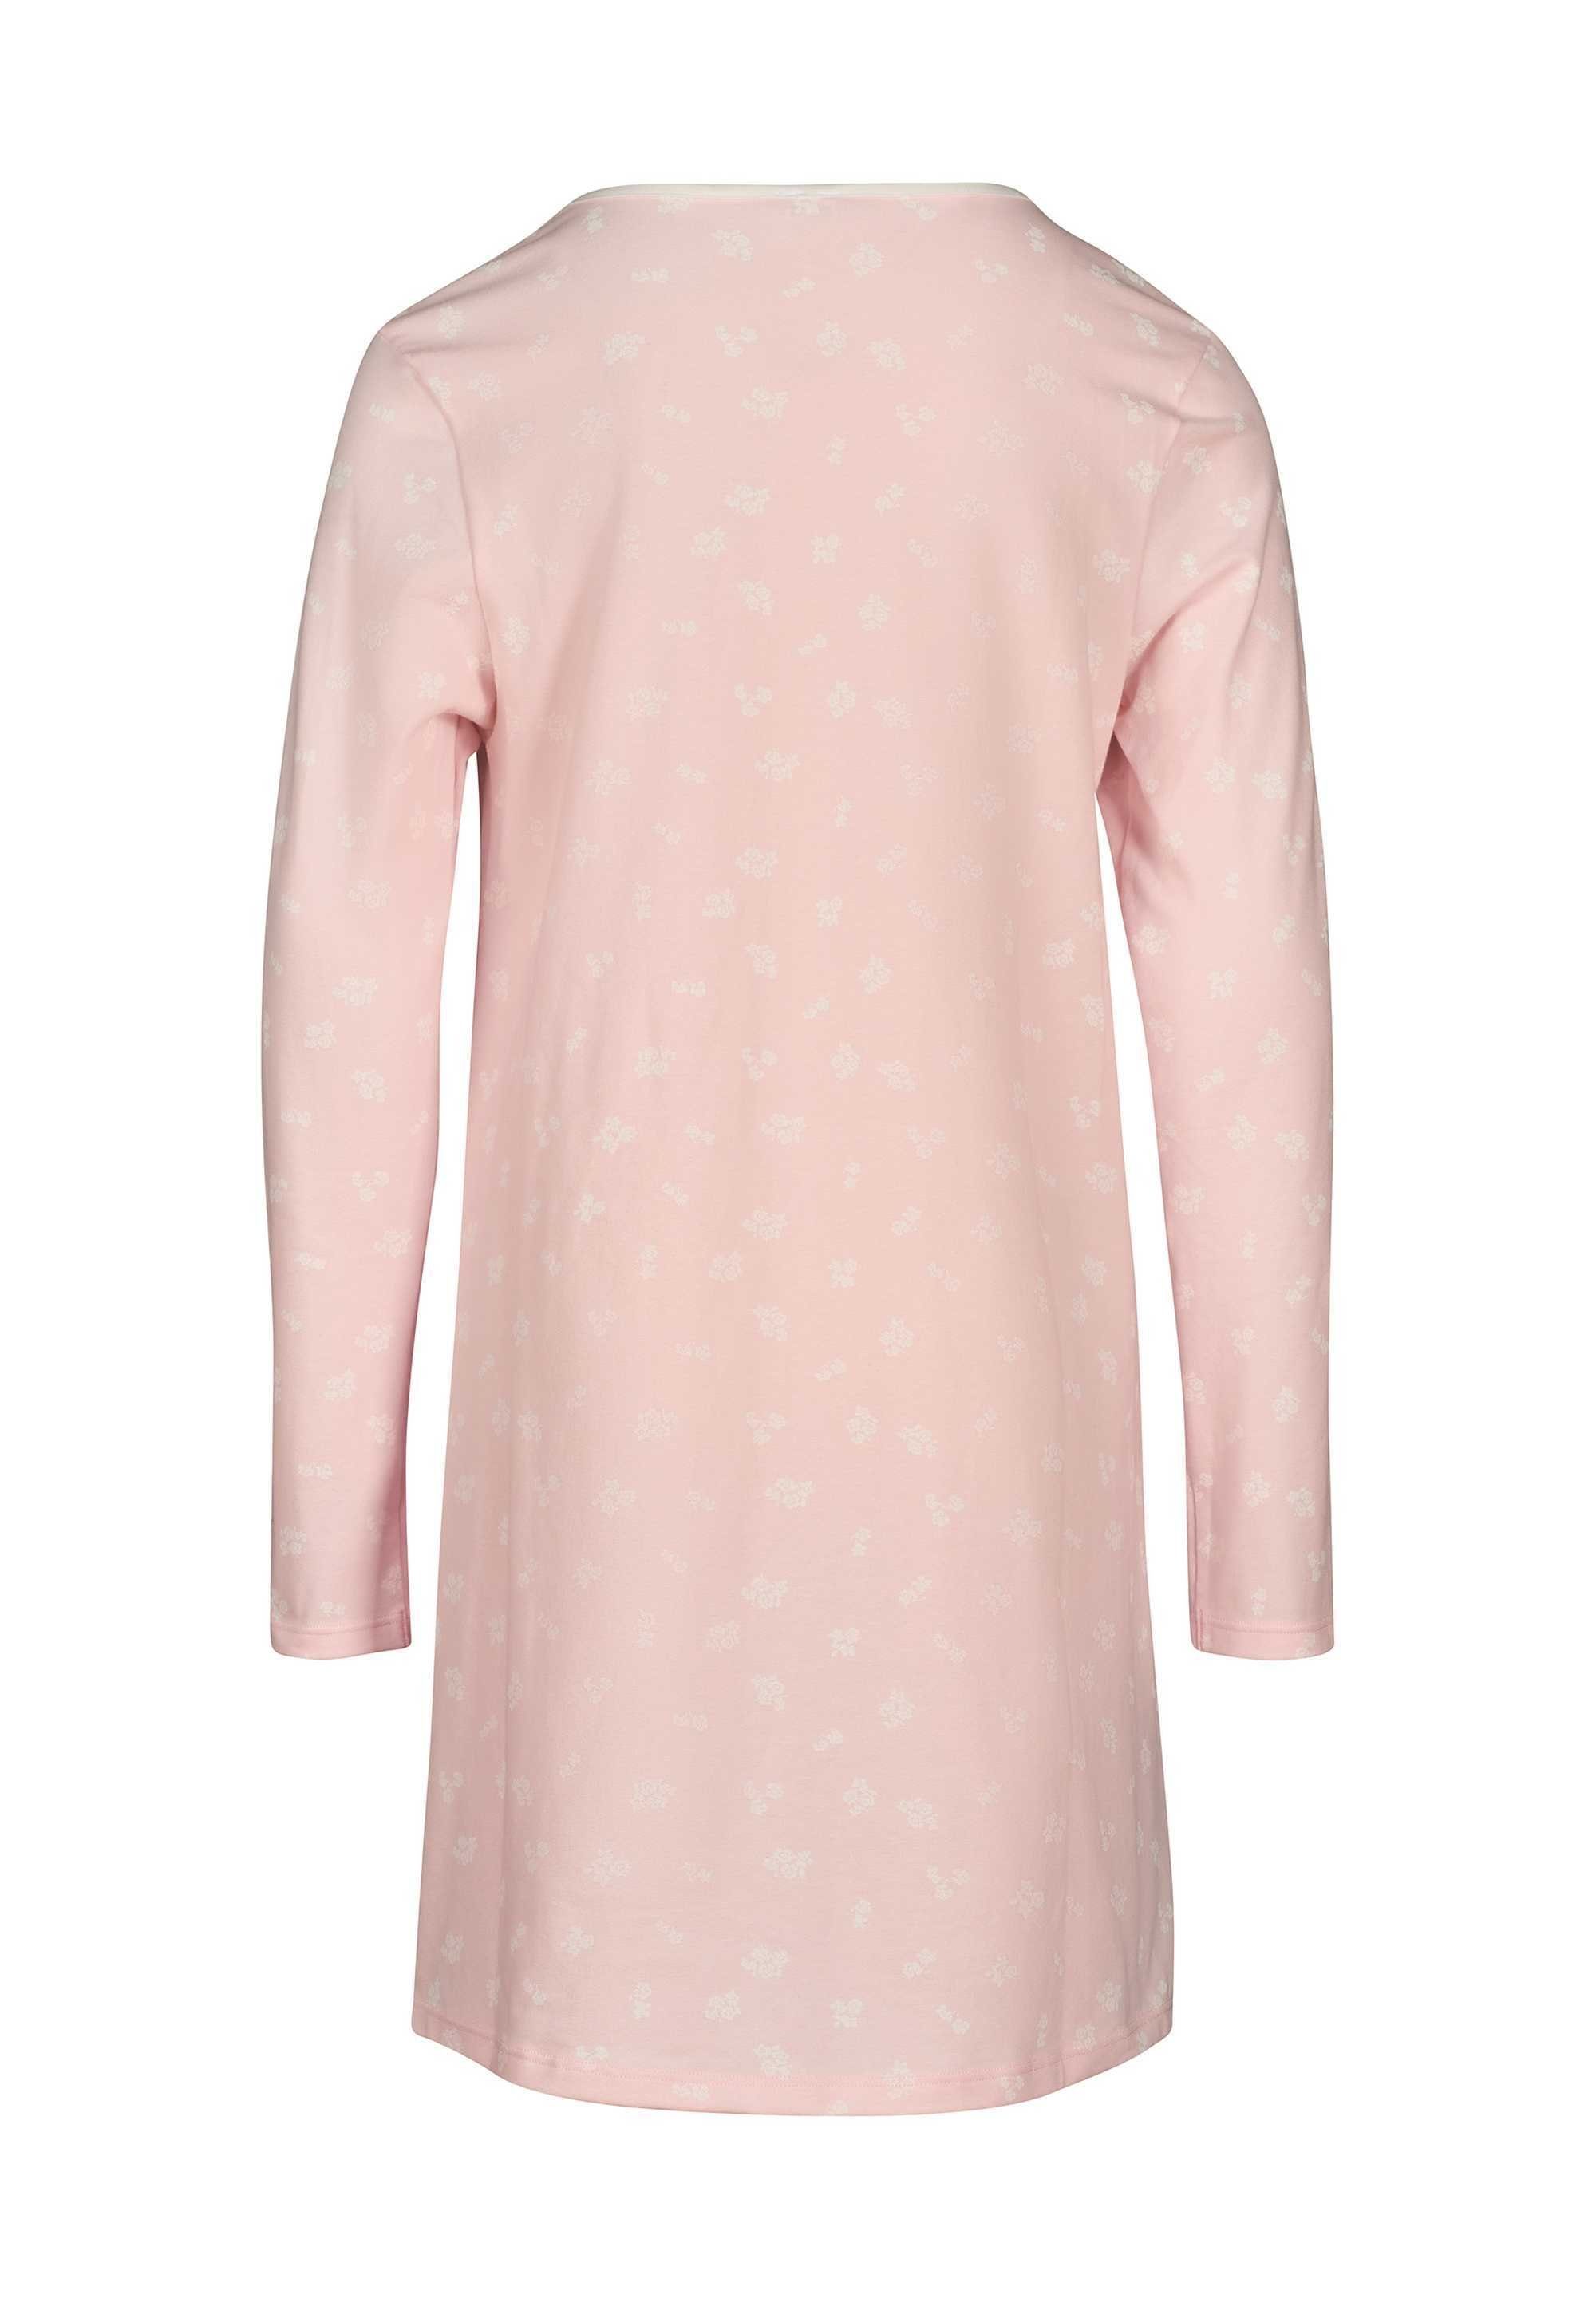 Skiny Langarm, Nachthemd Kinder Mädchen - Sleepshirt, Pyjama Rosa